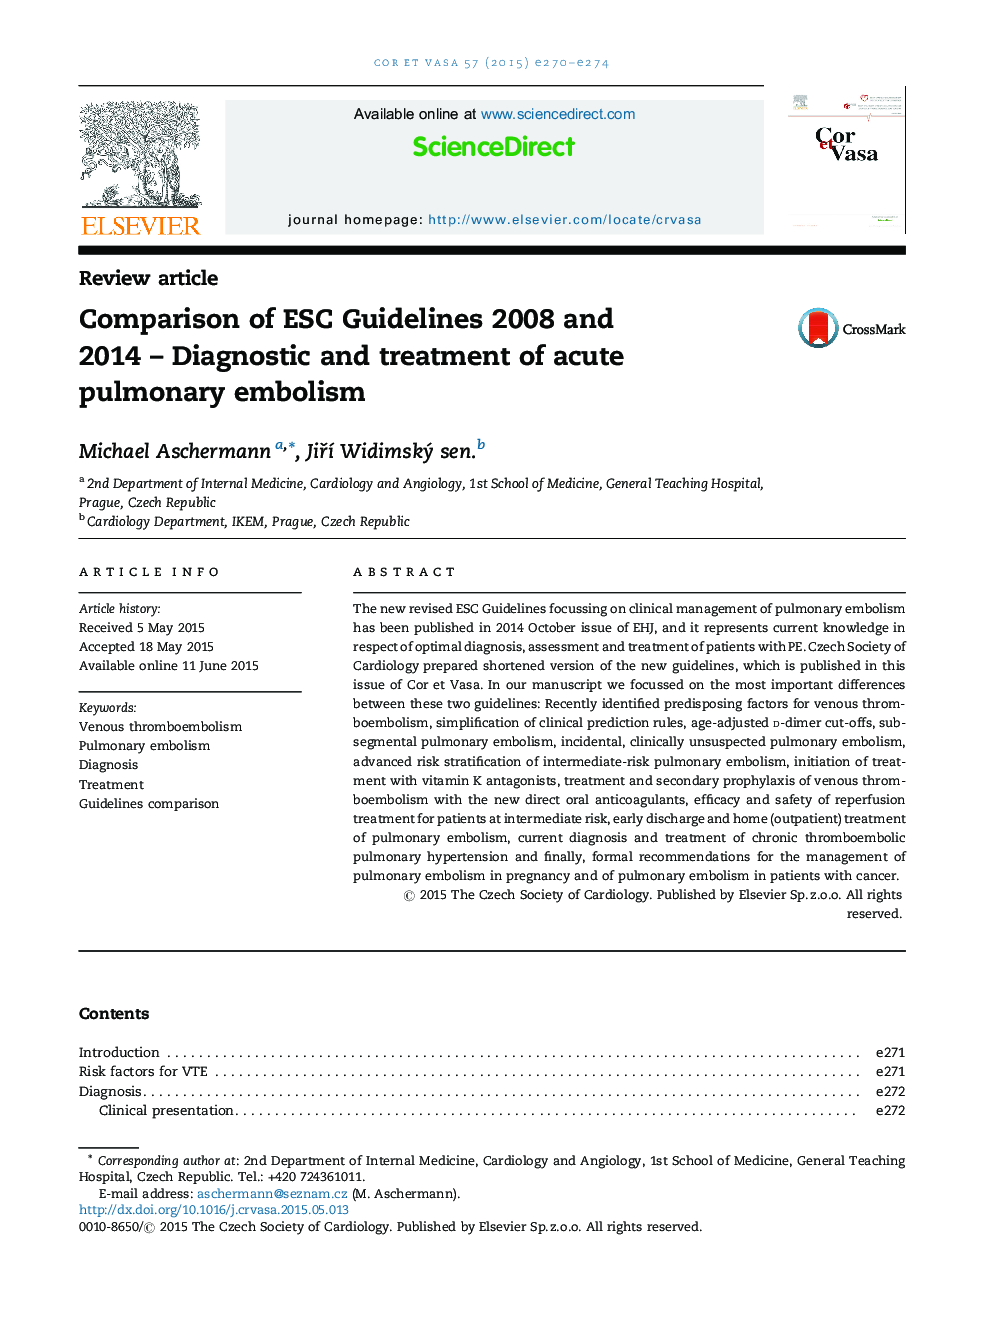 مقايسه دستورالعمل هاي ESC 2008 و 2014 - تشخيص و درمان آمبولي حاد ريوی